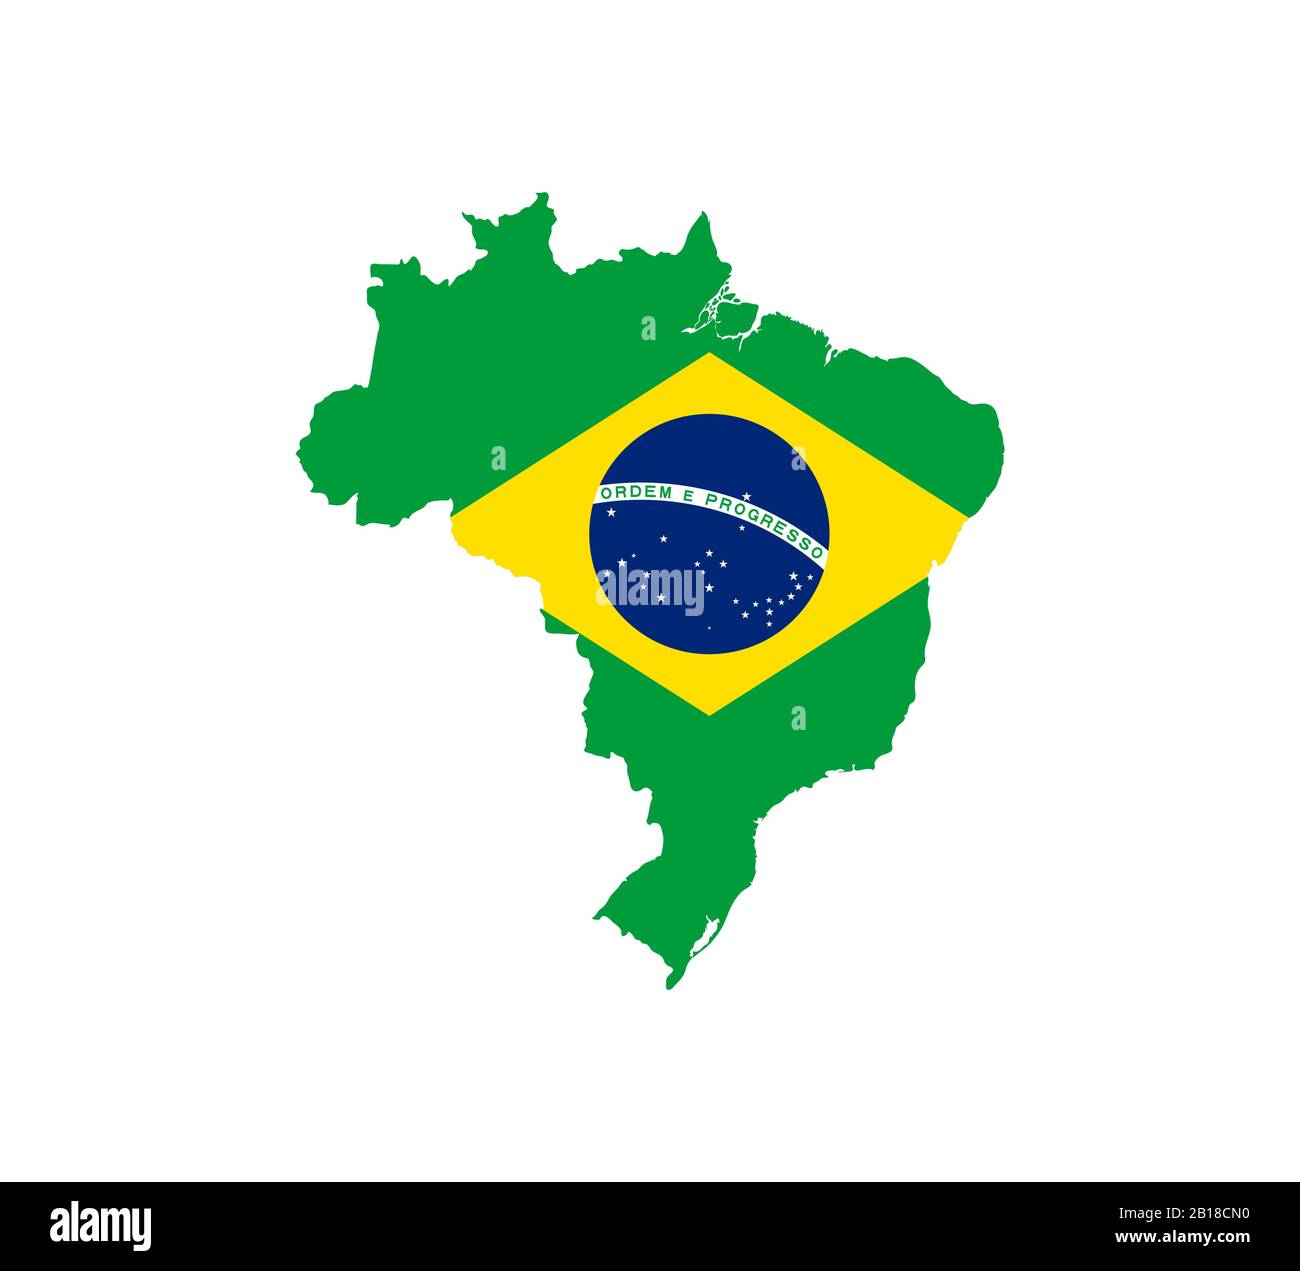 Brasilien-Karte, Flagge. Vektorgrafiken, flaches Design. Stock Vektor